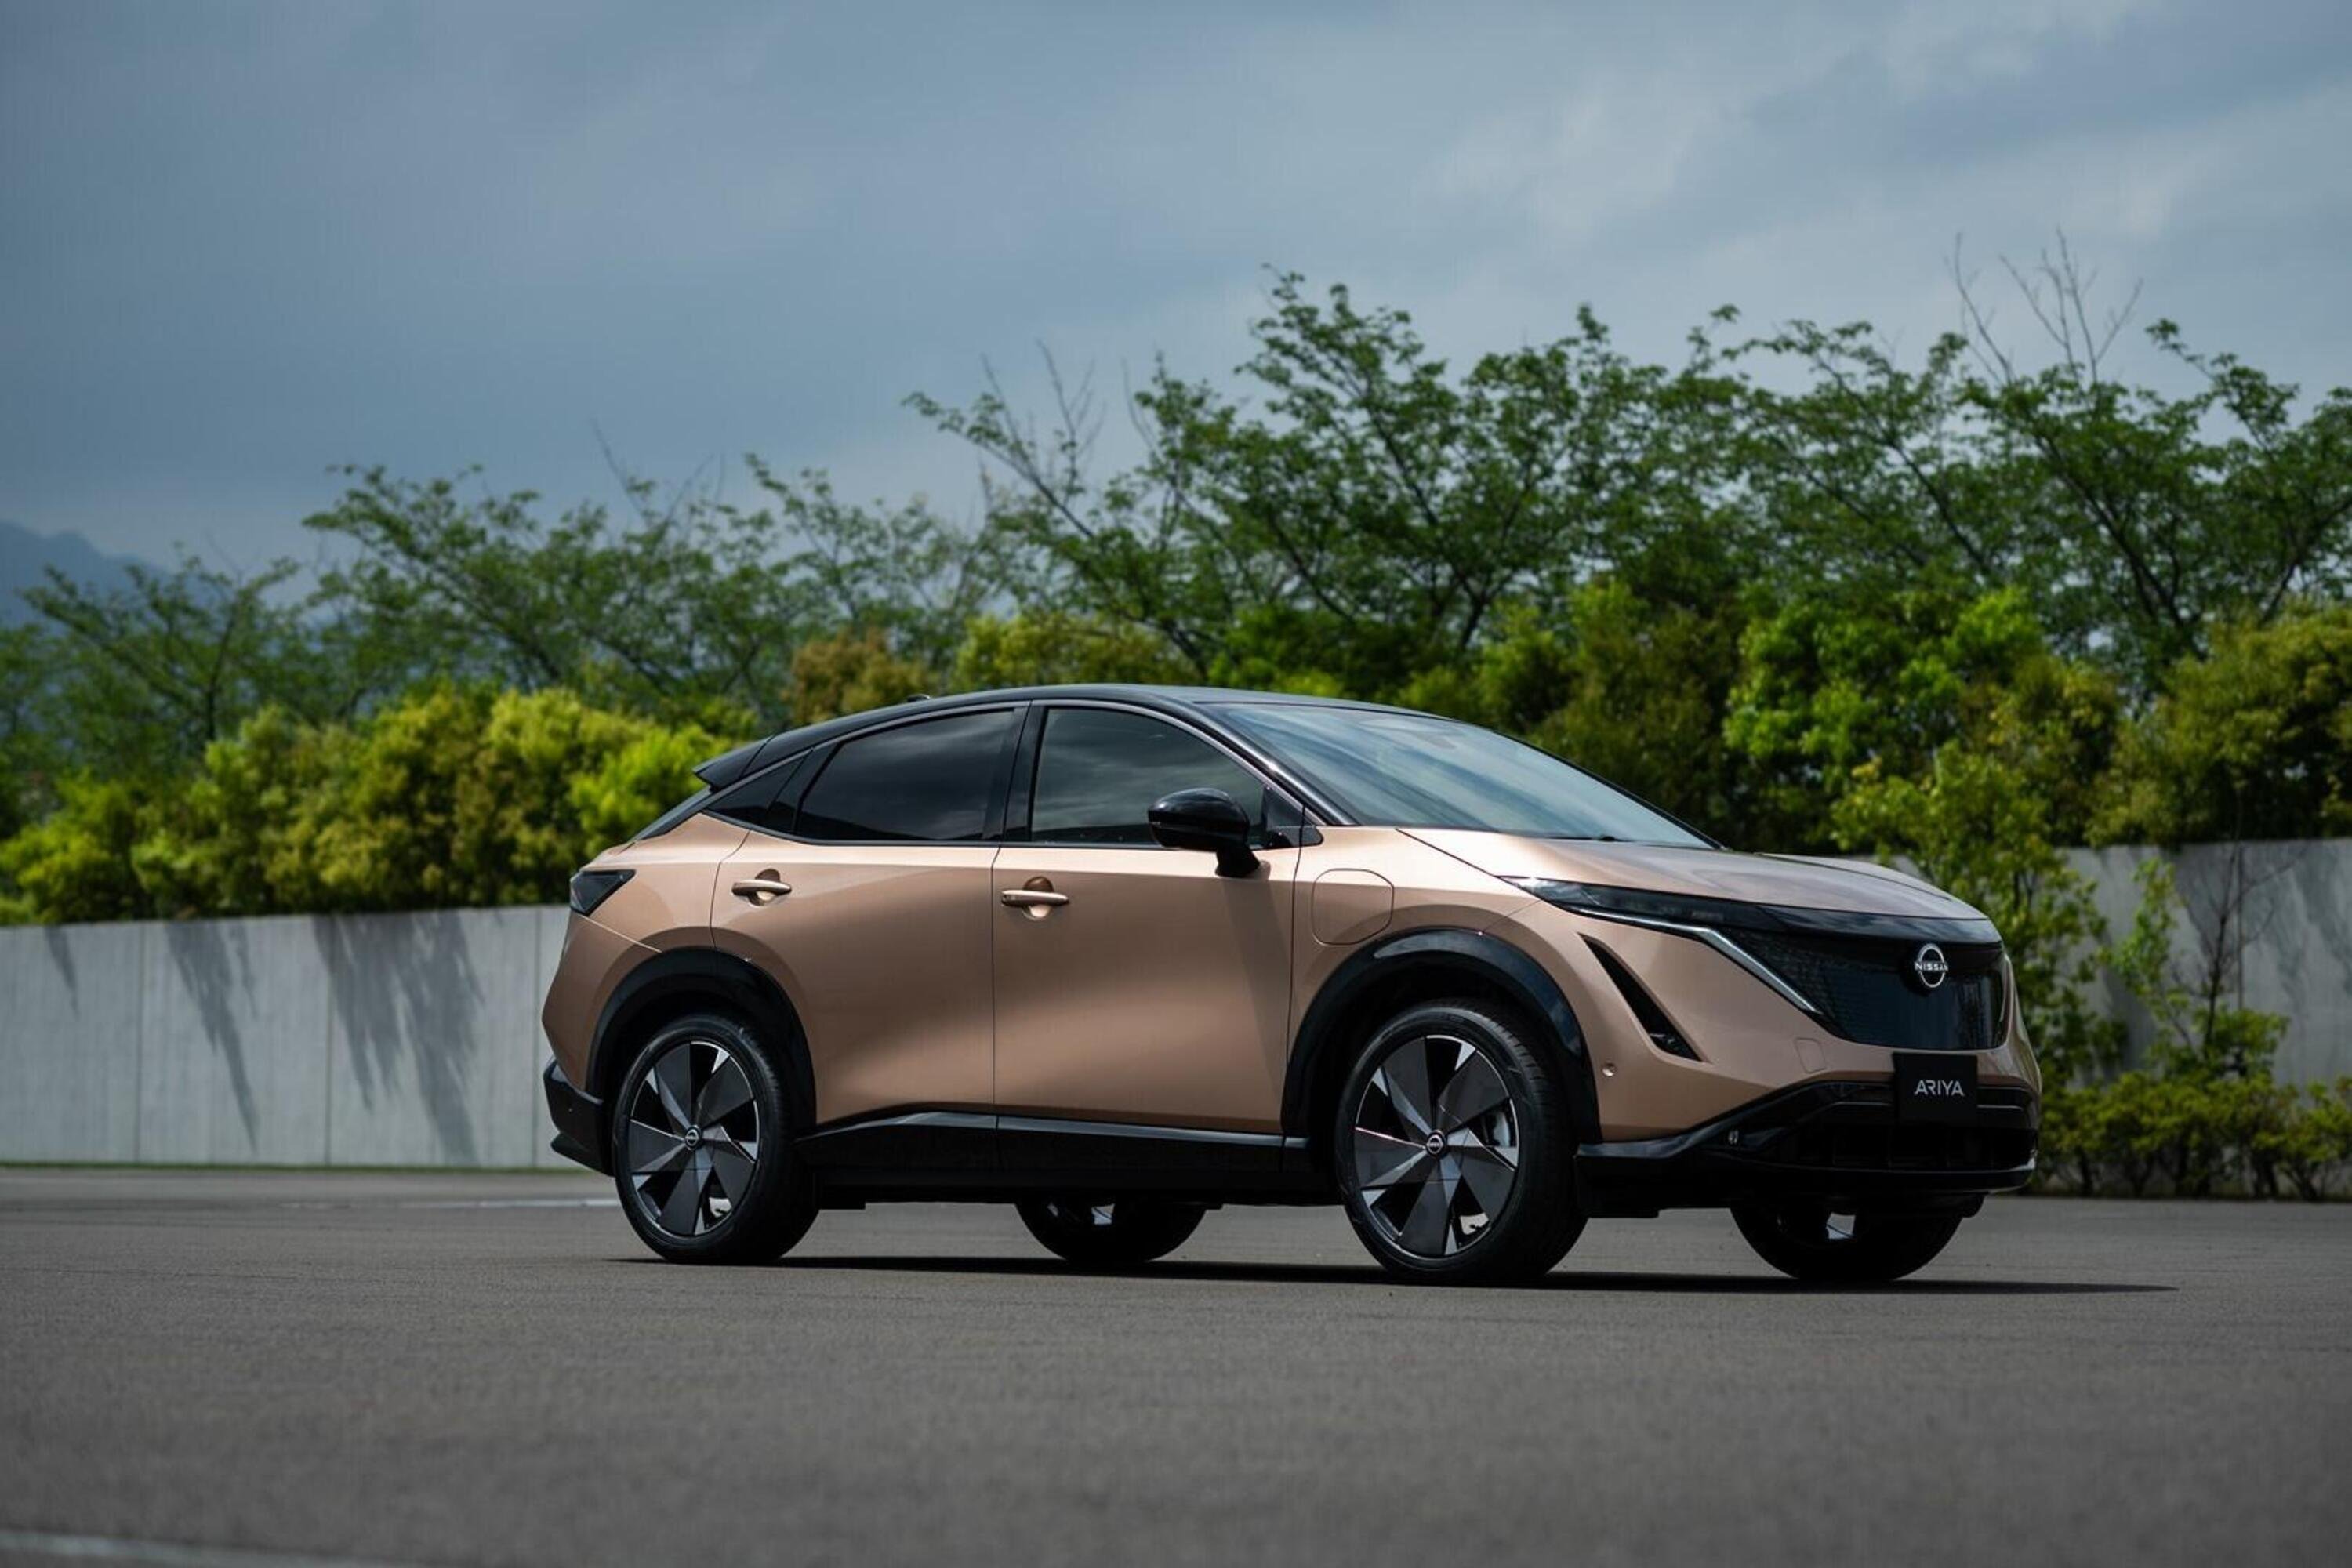 Lo stile di Ariya ispirer&agrave; le nuove auto Nissan: semplicit&agrave; e futurismo giapponese [Intervista]